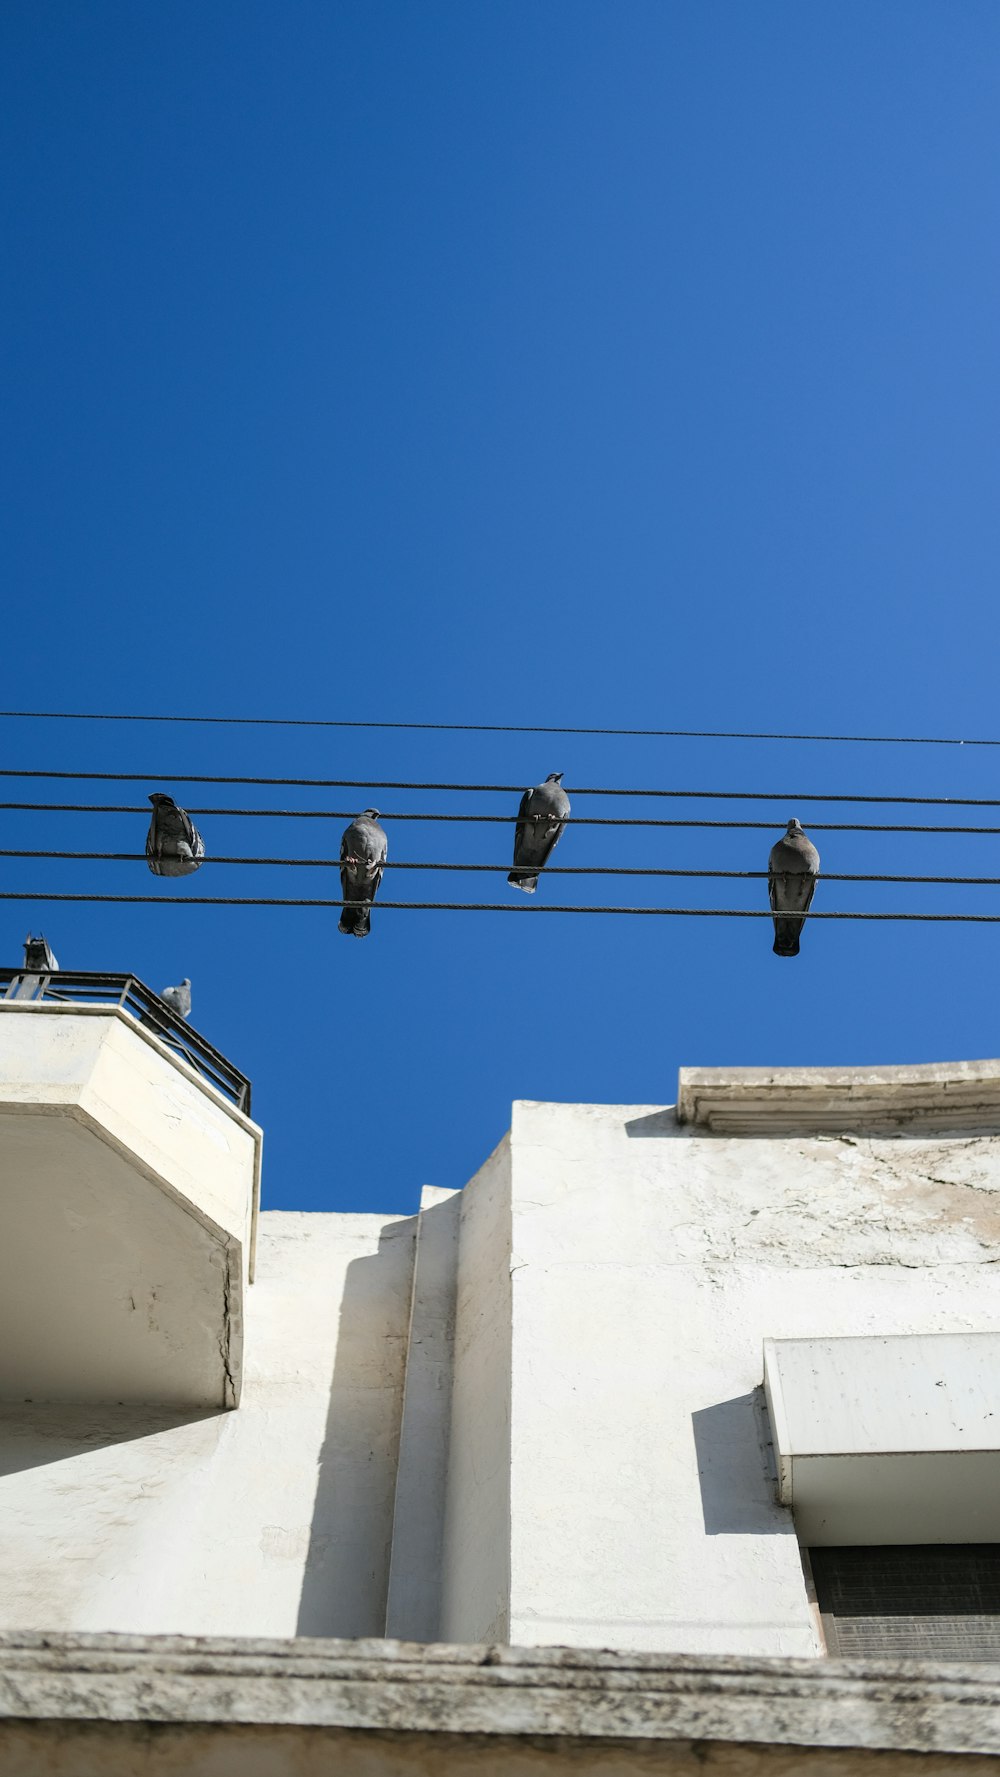 Eine Gruppe von Vögeln sitzt auf einem Draht über einem Gebäude